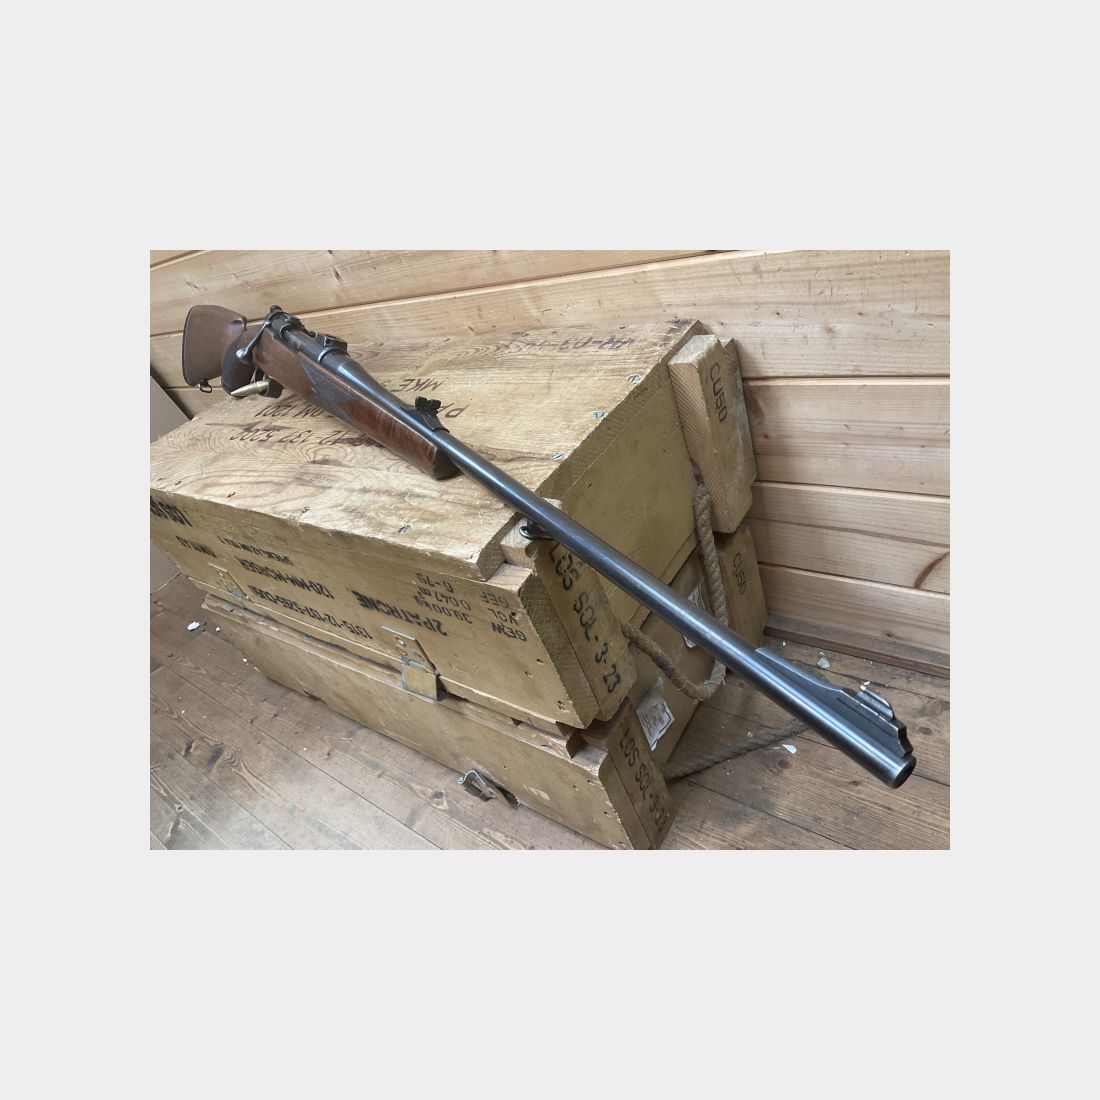 Repetierbüchse Mauser 98er, Kal.8x57IS, mit Schwenkmontage- Unterteilen